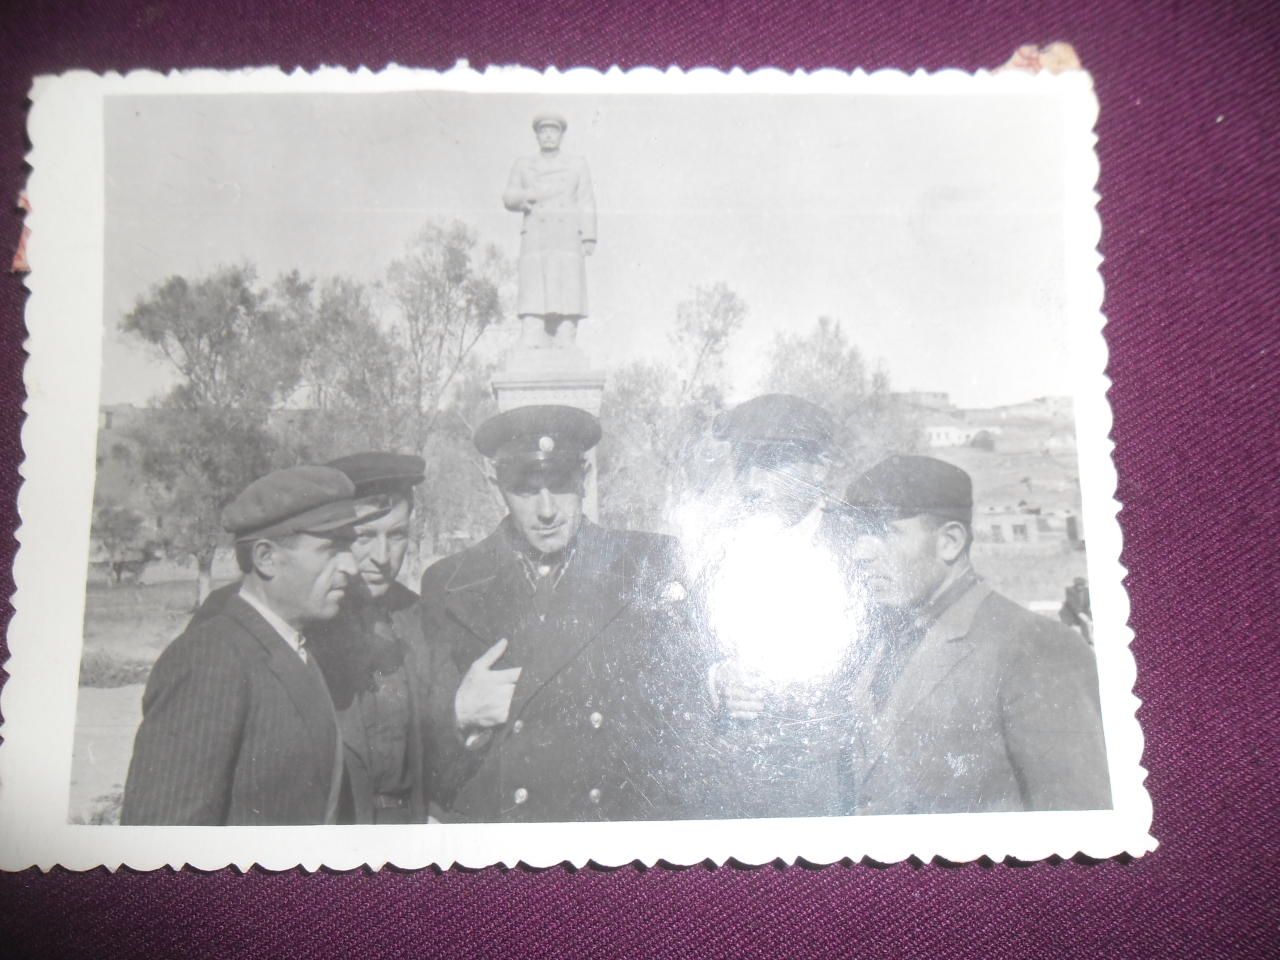 Թադևոս Նիկոլայի Նալբանդյանը (ԽՍՀՄ և ՀԽՍՀ ժուռնալիստների միության անդամ, լրագրող) ընկերների հետ